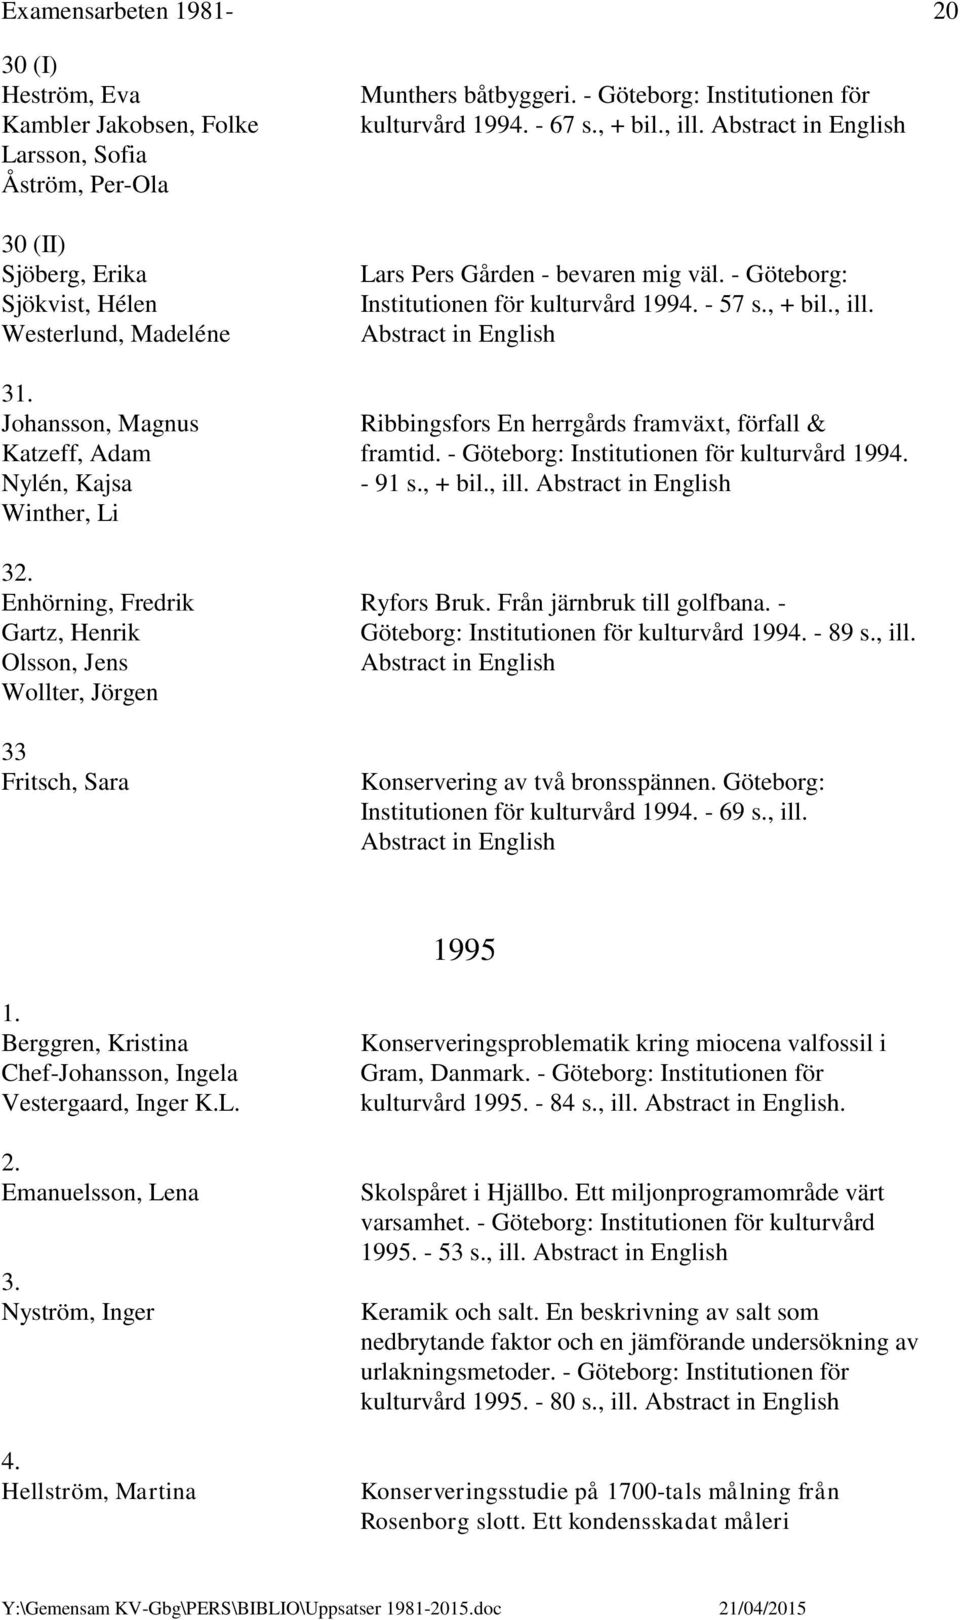 Johansson, Magnus Ribbingsfors En herrgårds framväxt, förfall & Katzeff, Adam framtid. - Göteborg: Institutionen för kulturvård 1994. Nylén, Kajsa - 91 s., + bil., ill. Winther, Li 32.